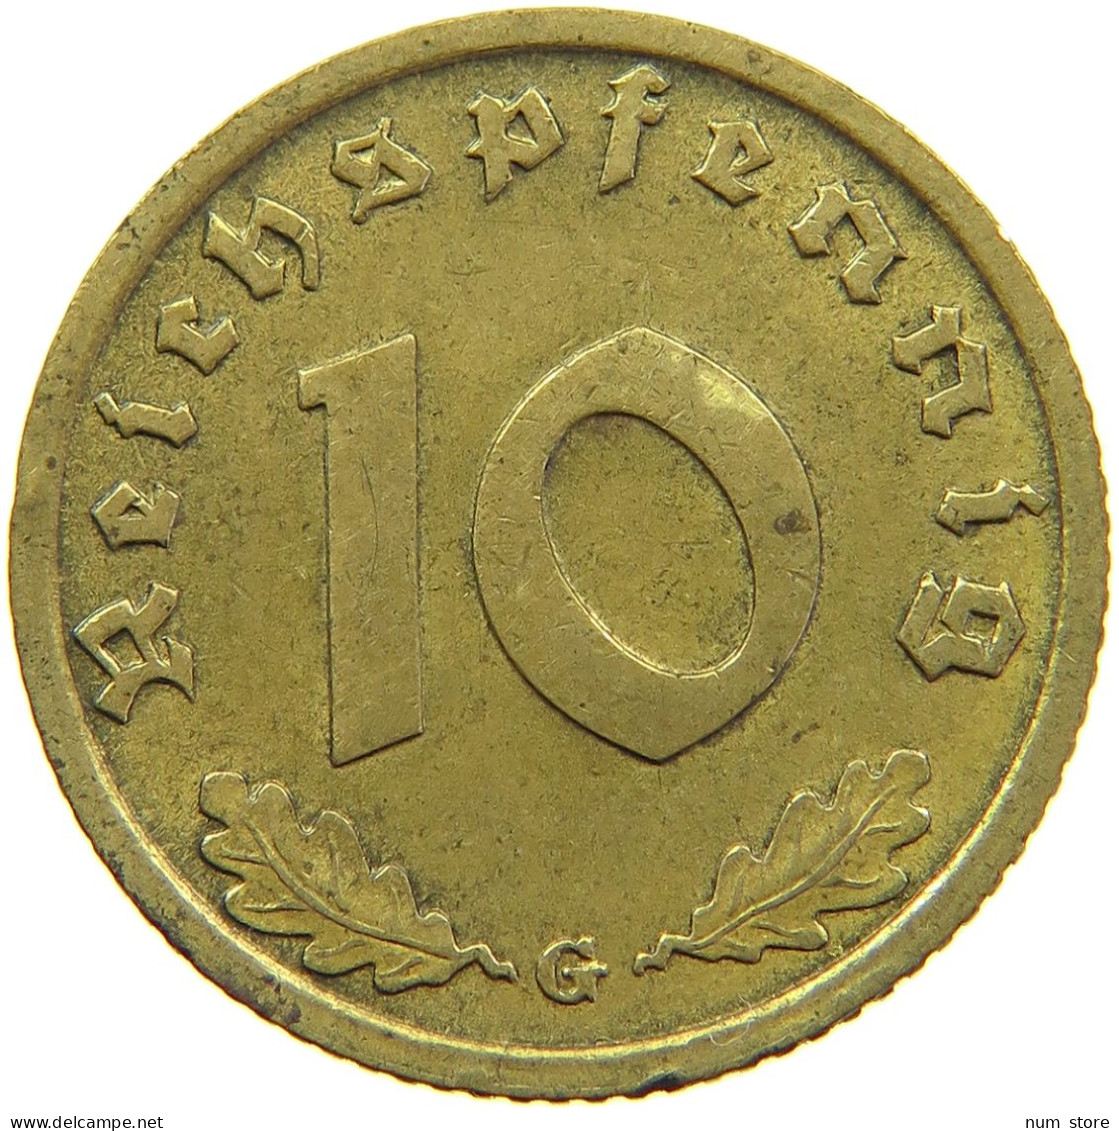 GERMANY 10 REICHSPFENNIG 1938 G #s095 0169 - 10 Reichspfennig